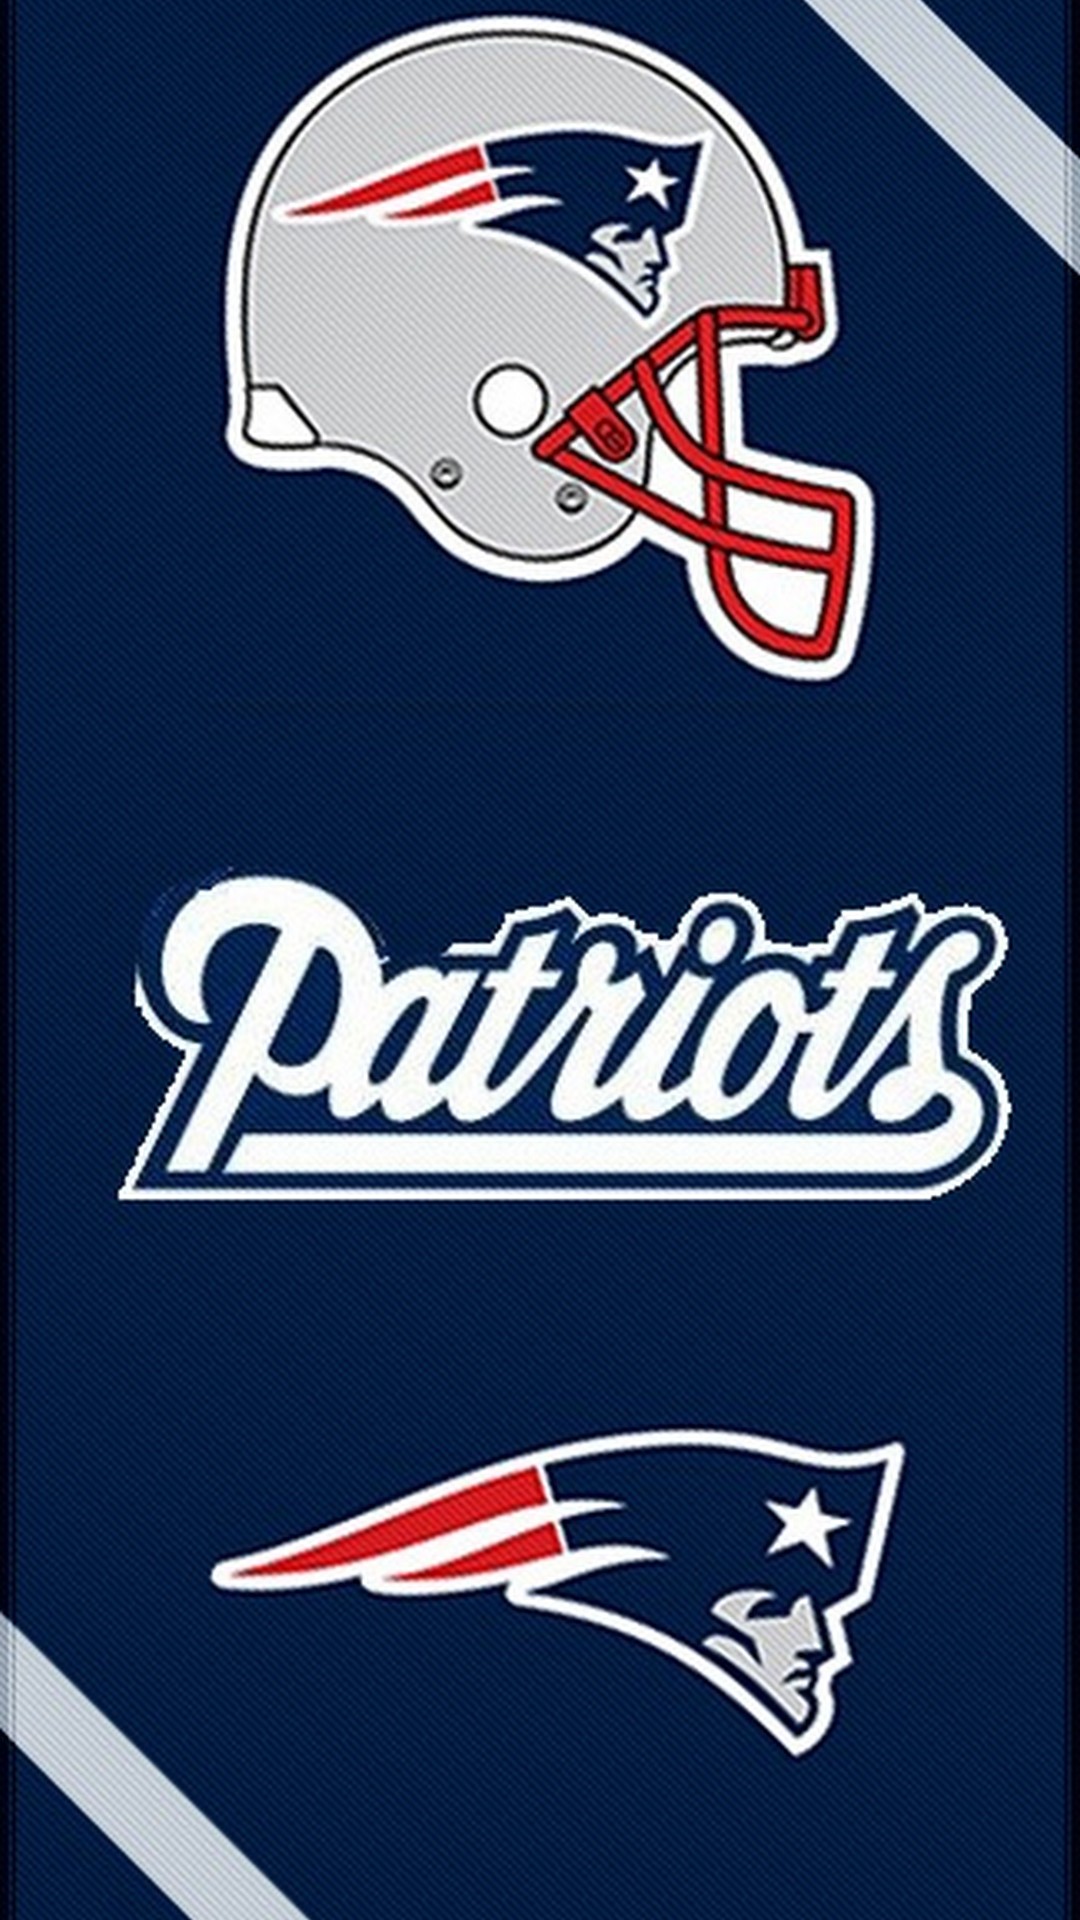 New England Patriots Wallpaper 2019 - HD Wallpaper 